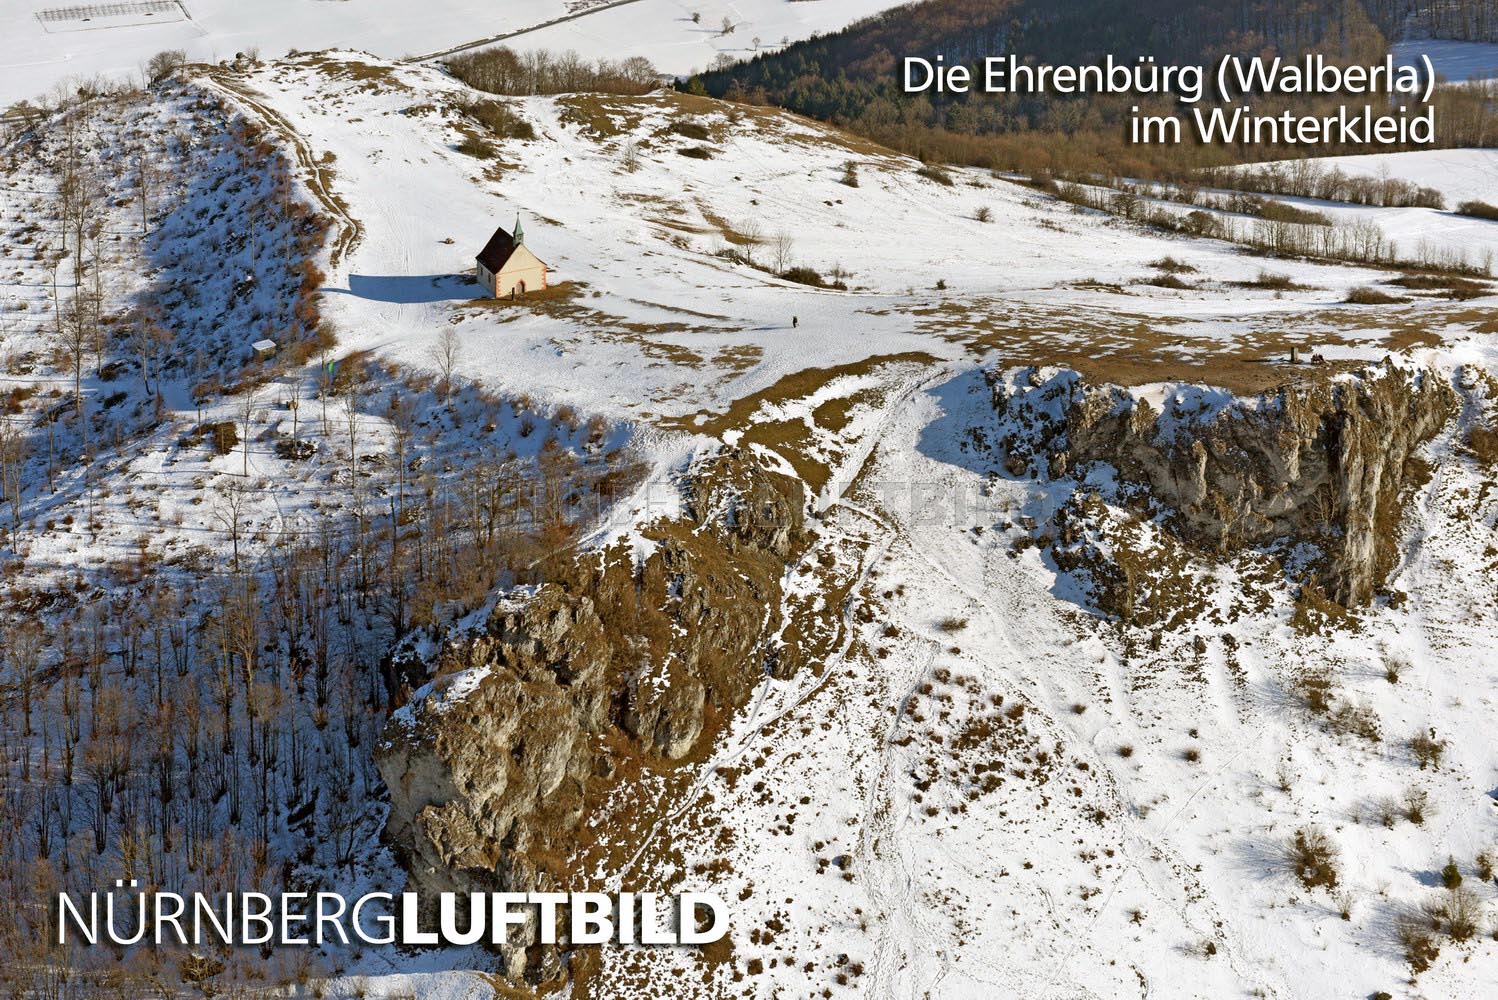 Die Ehrenbürg (Walberla) im Winterkleid, Luftaufnahme